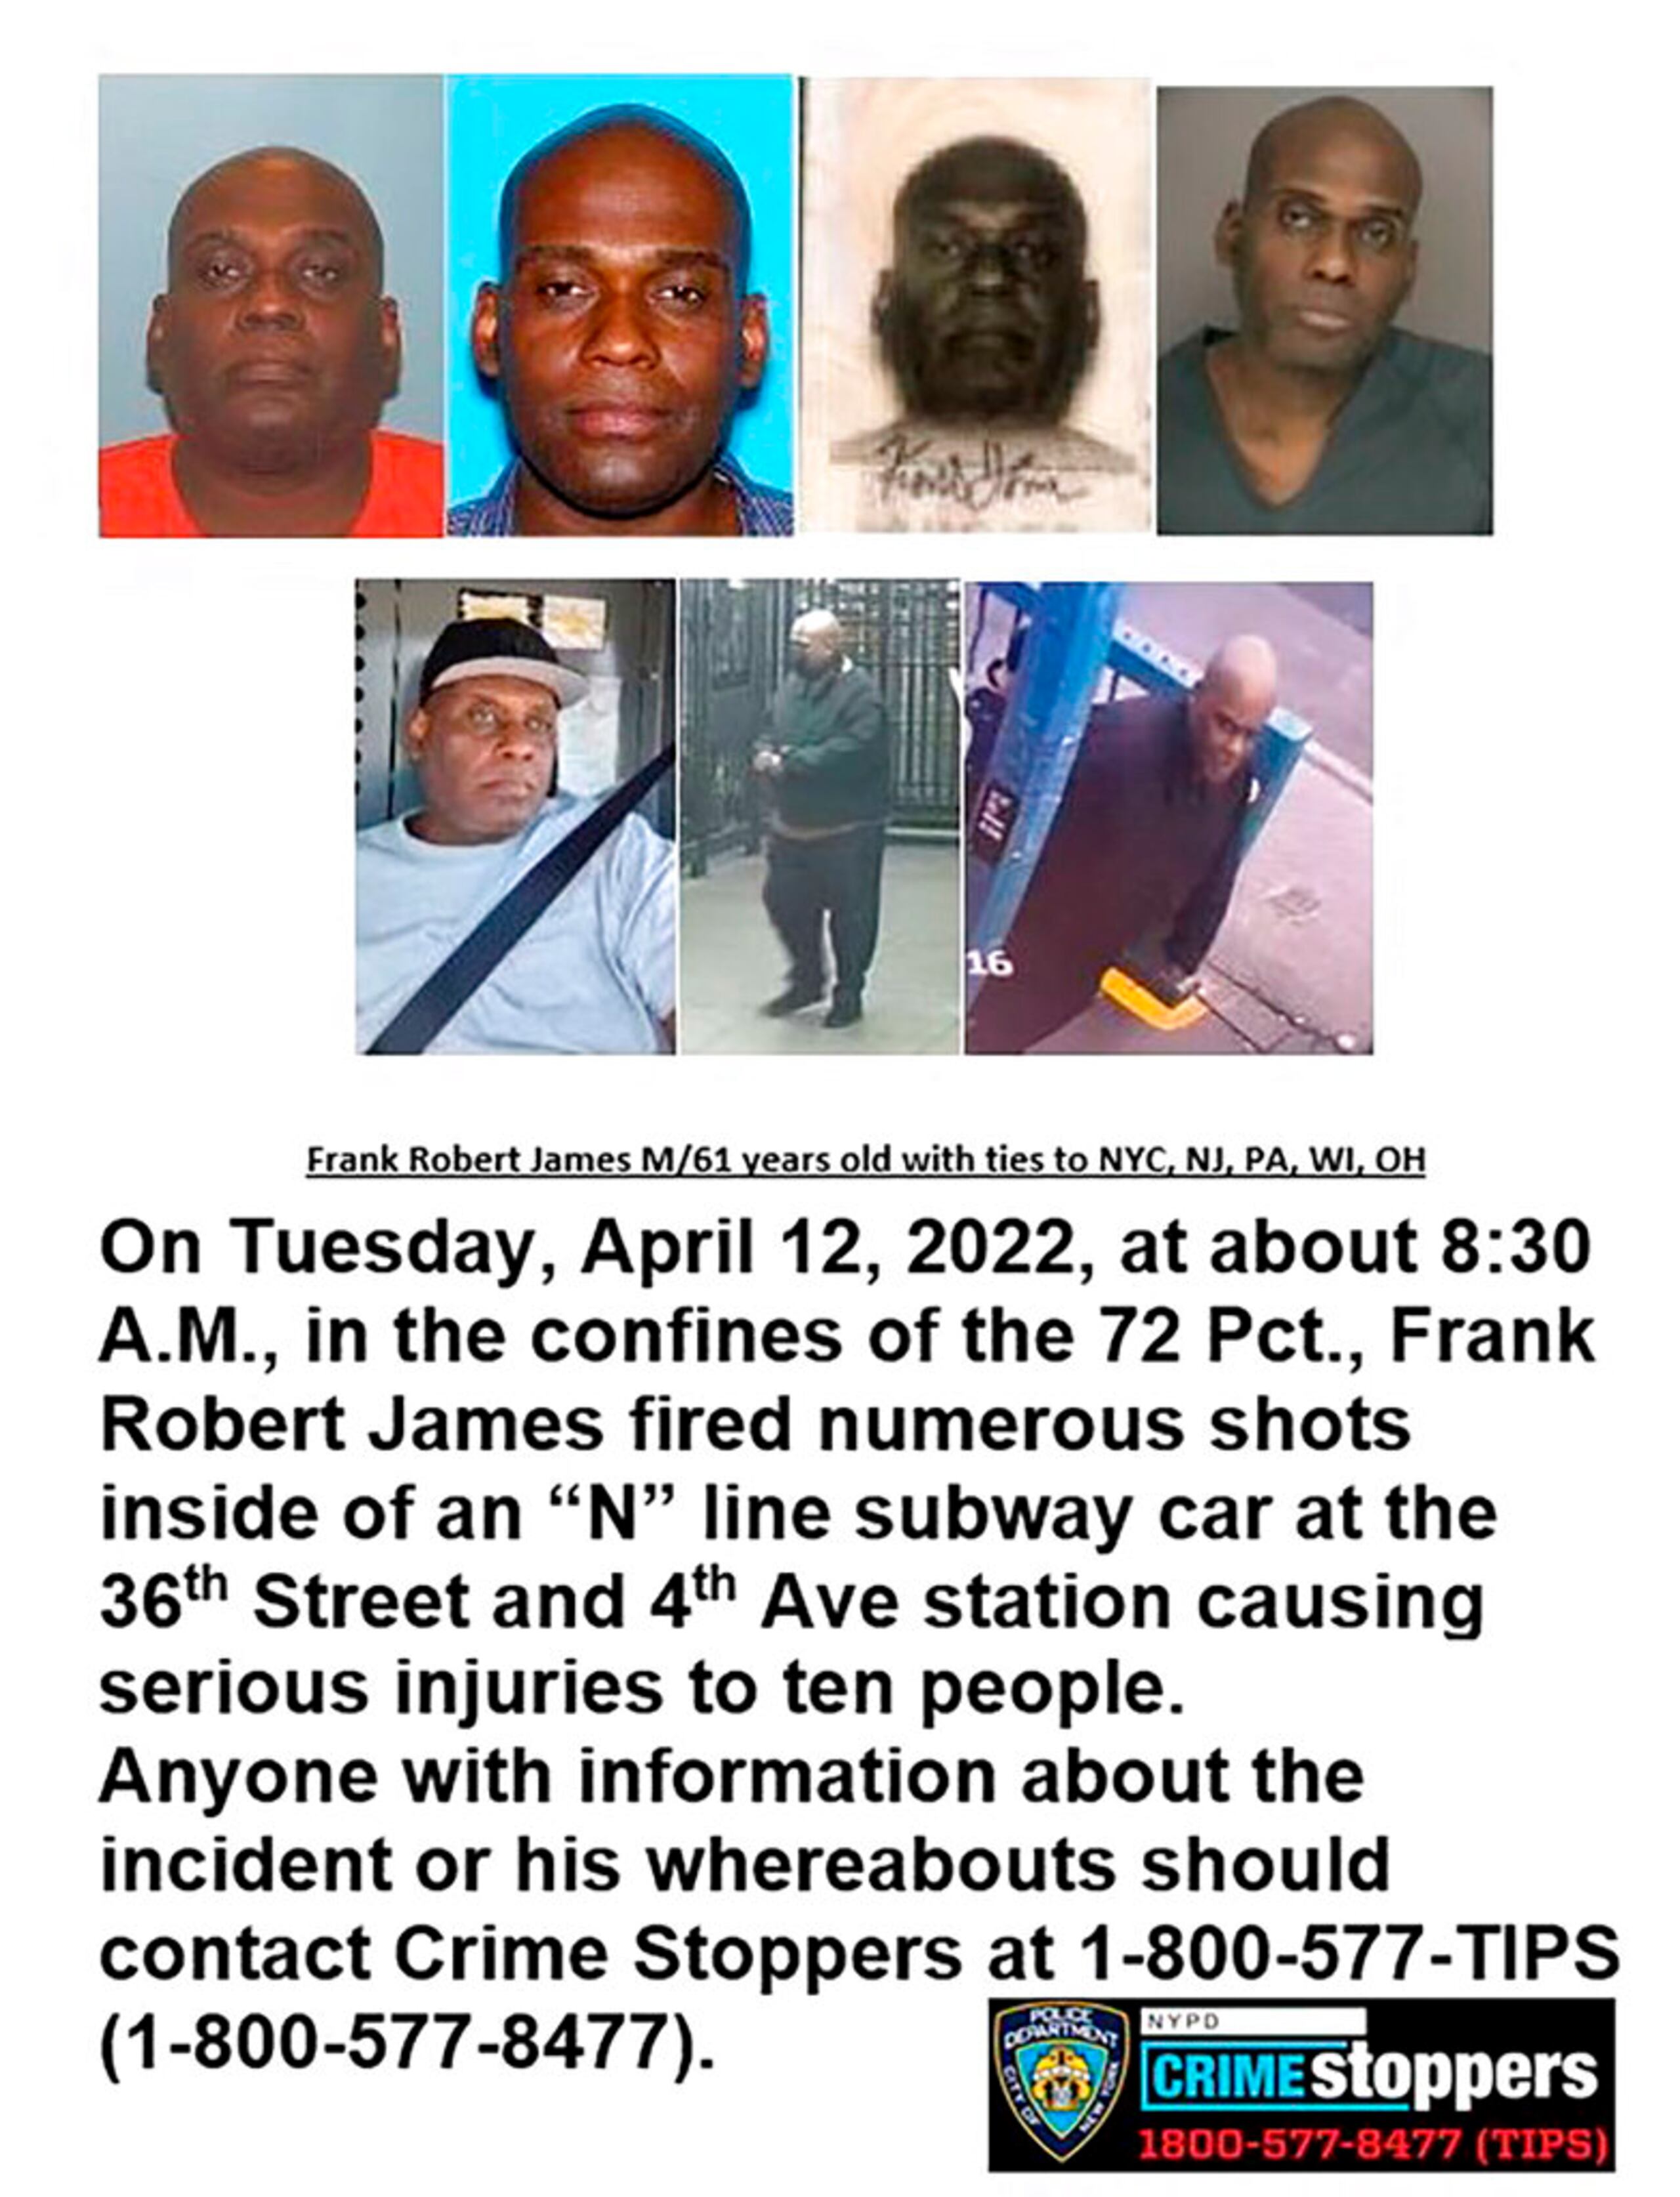 Esta imagen proporcionada por el Departamento de Policía de la ciudad de Nueva York muestra un boletín de Crime Stoppers que muestra fotos de Frank R. James, quien ha sido identificado por la policía como el arrendatario de una camioneta U-Haul posiblemente relacionada con el tiroteo en el metro de Brooklyn.